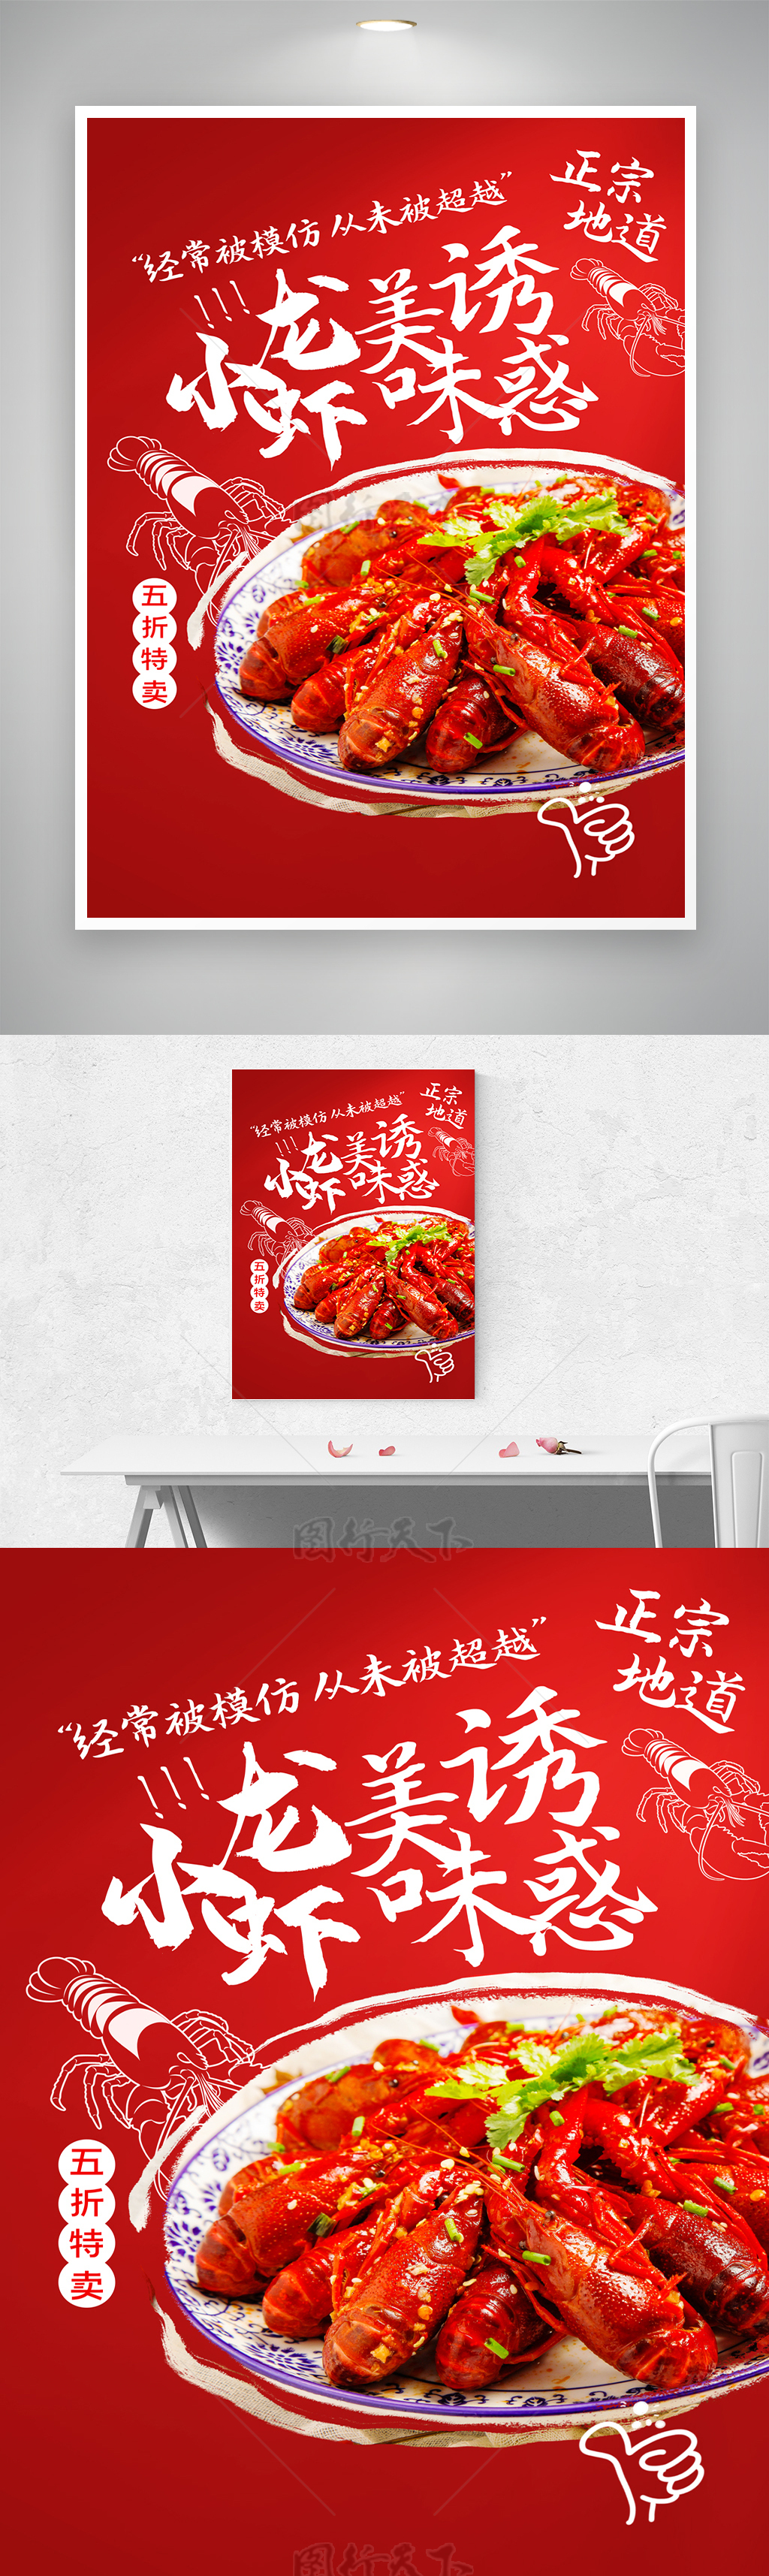 简洁半价鲜香龙虾活动宣传海报